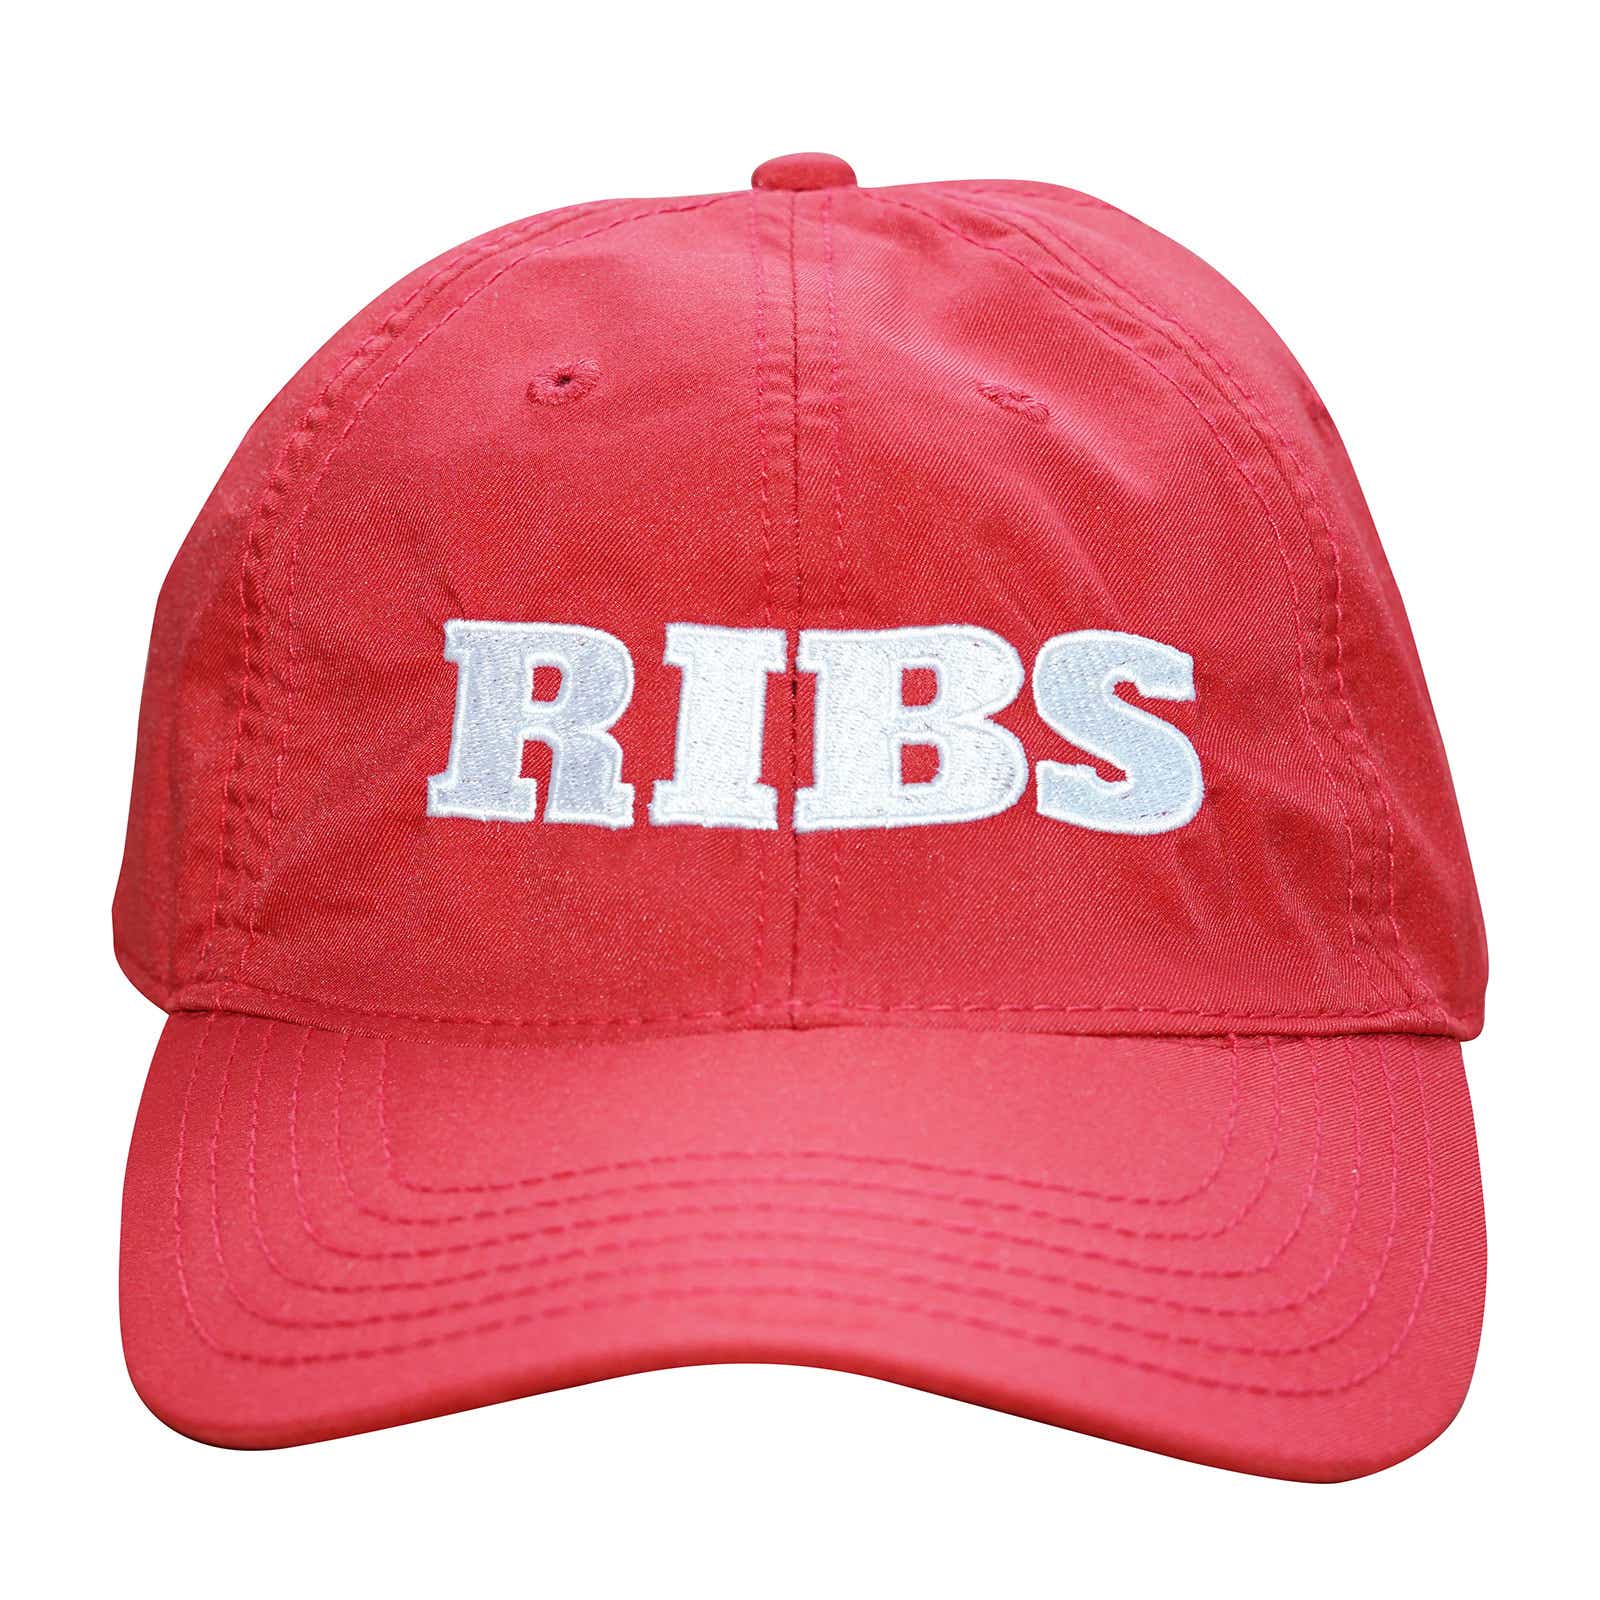 “RIBS” Hat